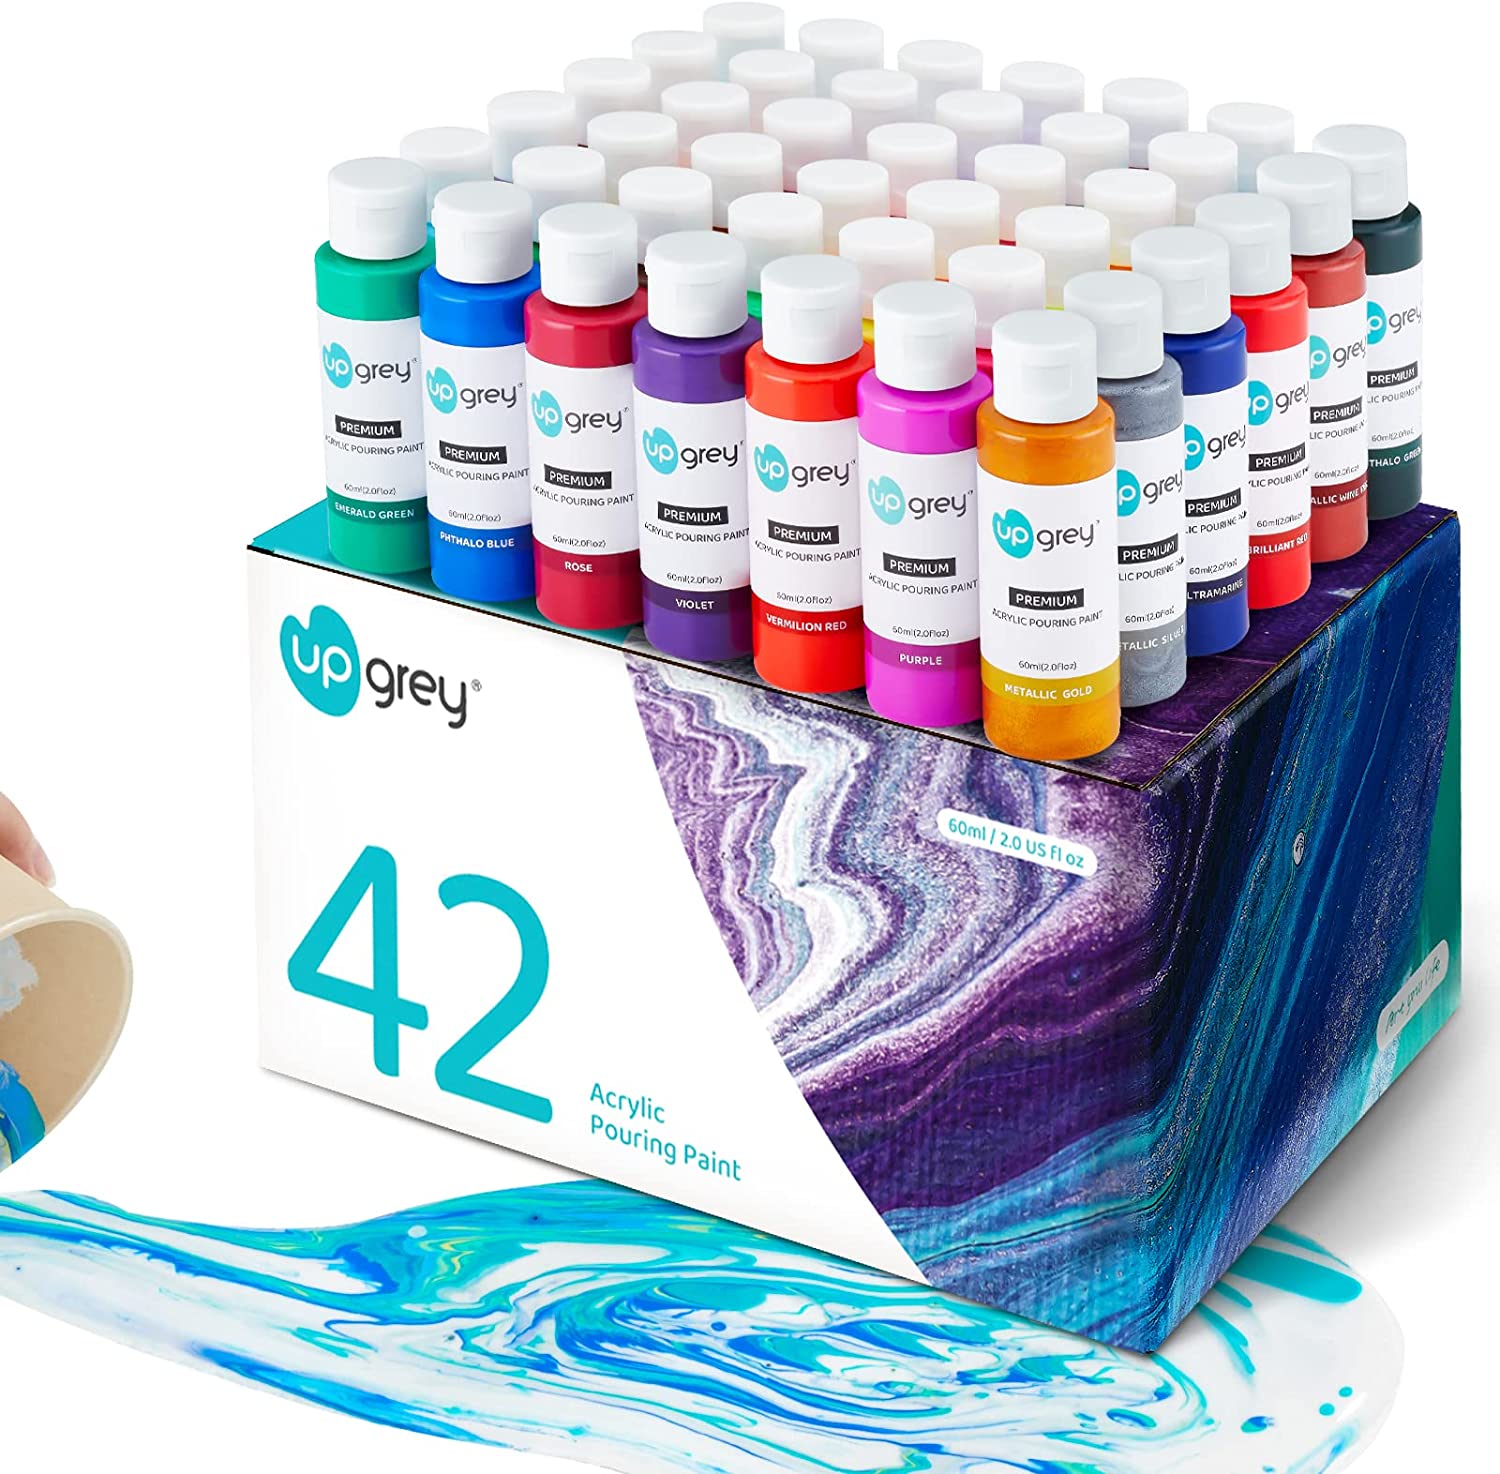 Acrylic Pouring Paint (60ml/2oz Bottles) 42 Colors, [...]